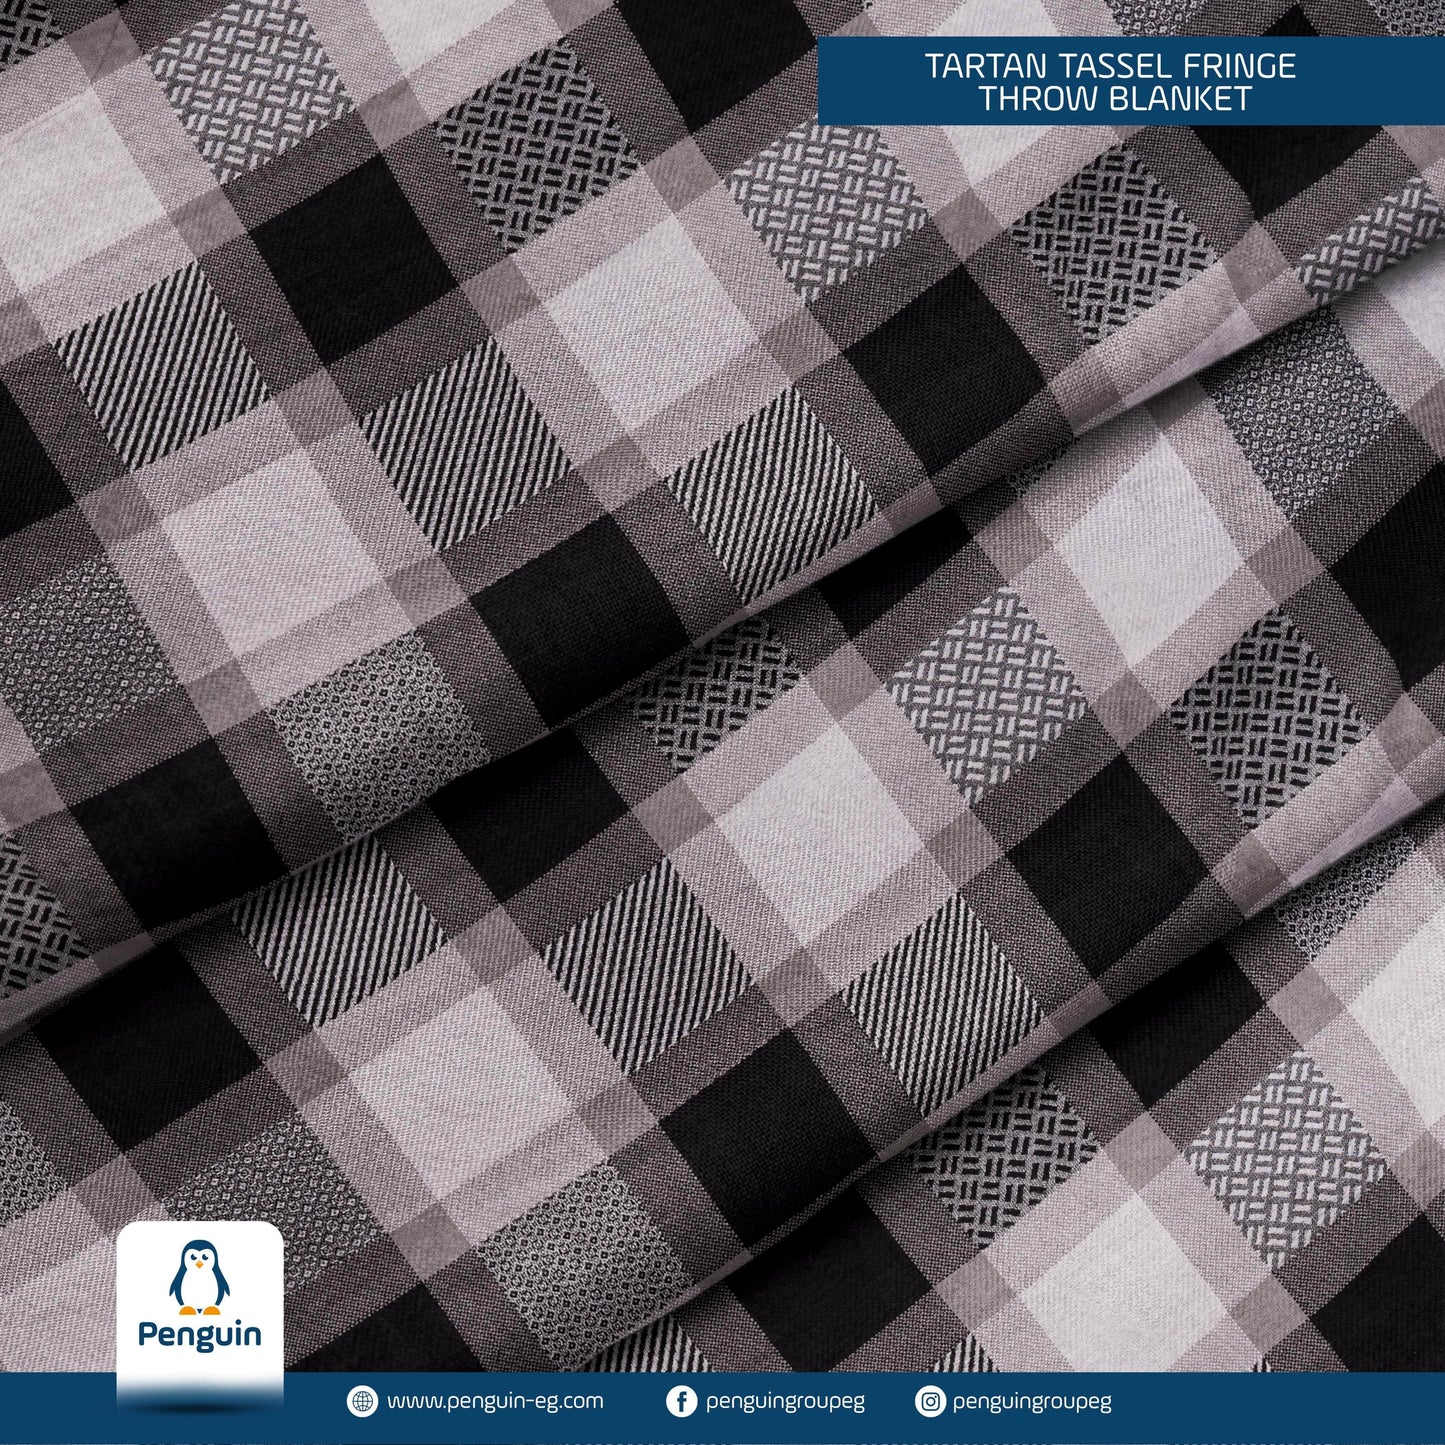 Penguin Group Blanket & Duvet Black/ White Tassel Fringe Throw Blanket 240 cm2